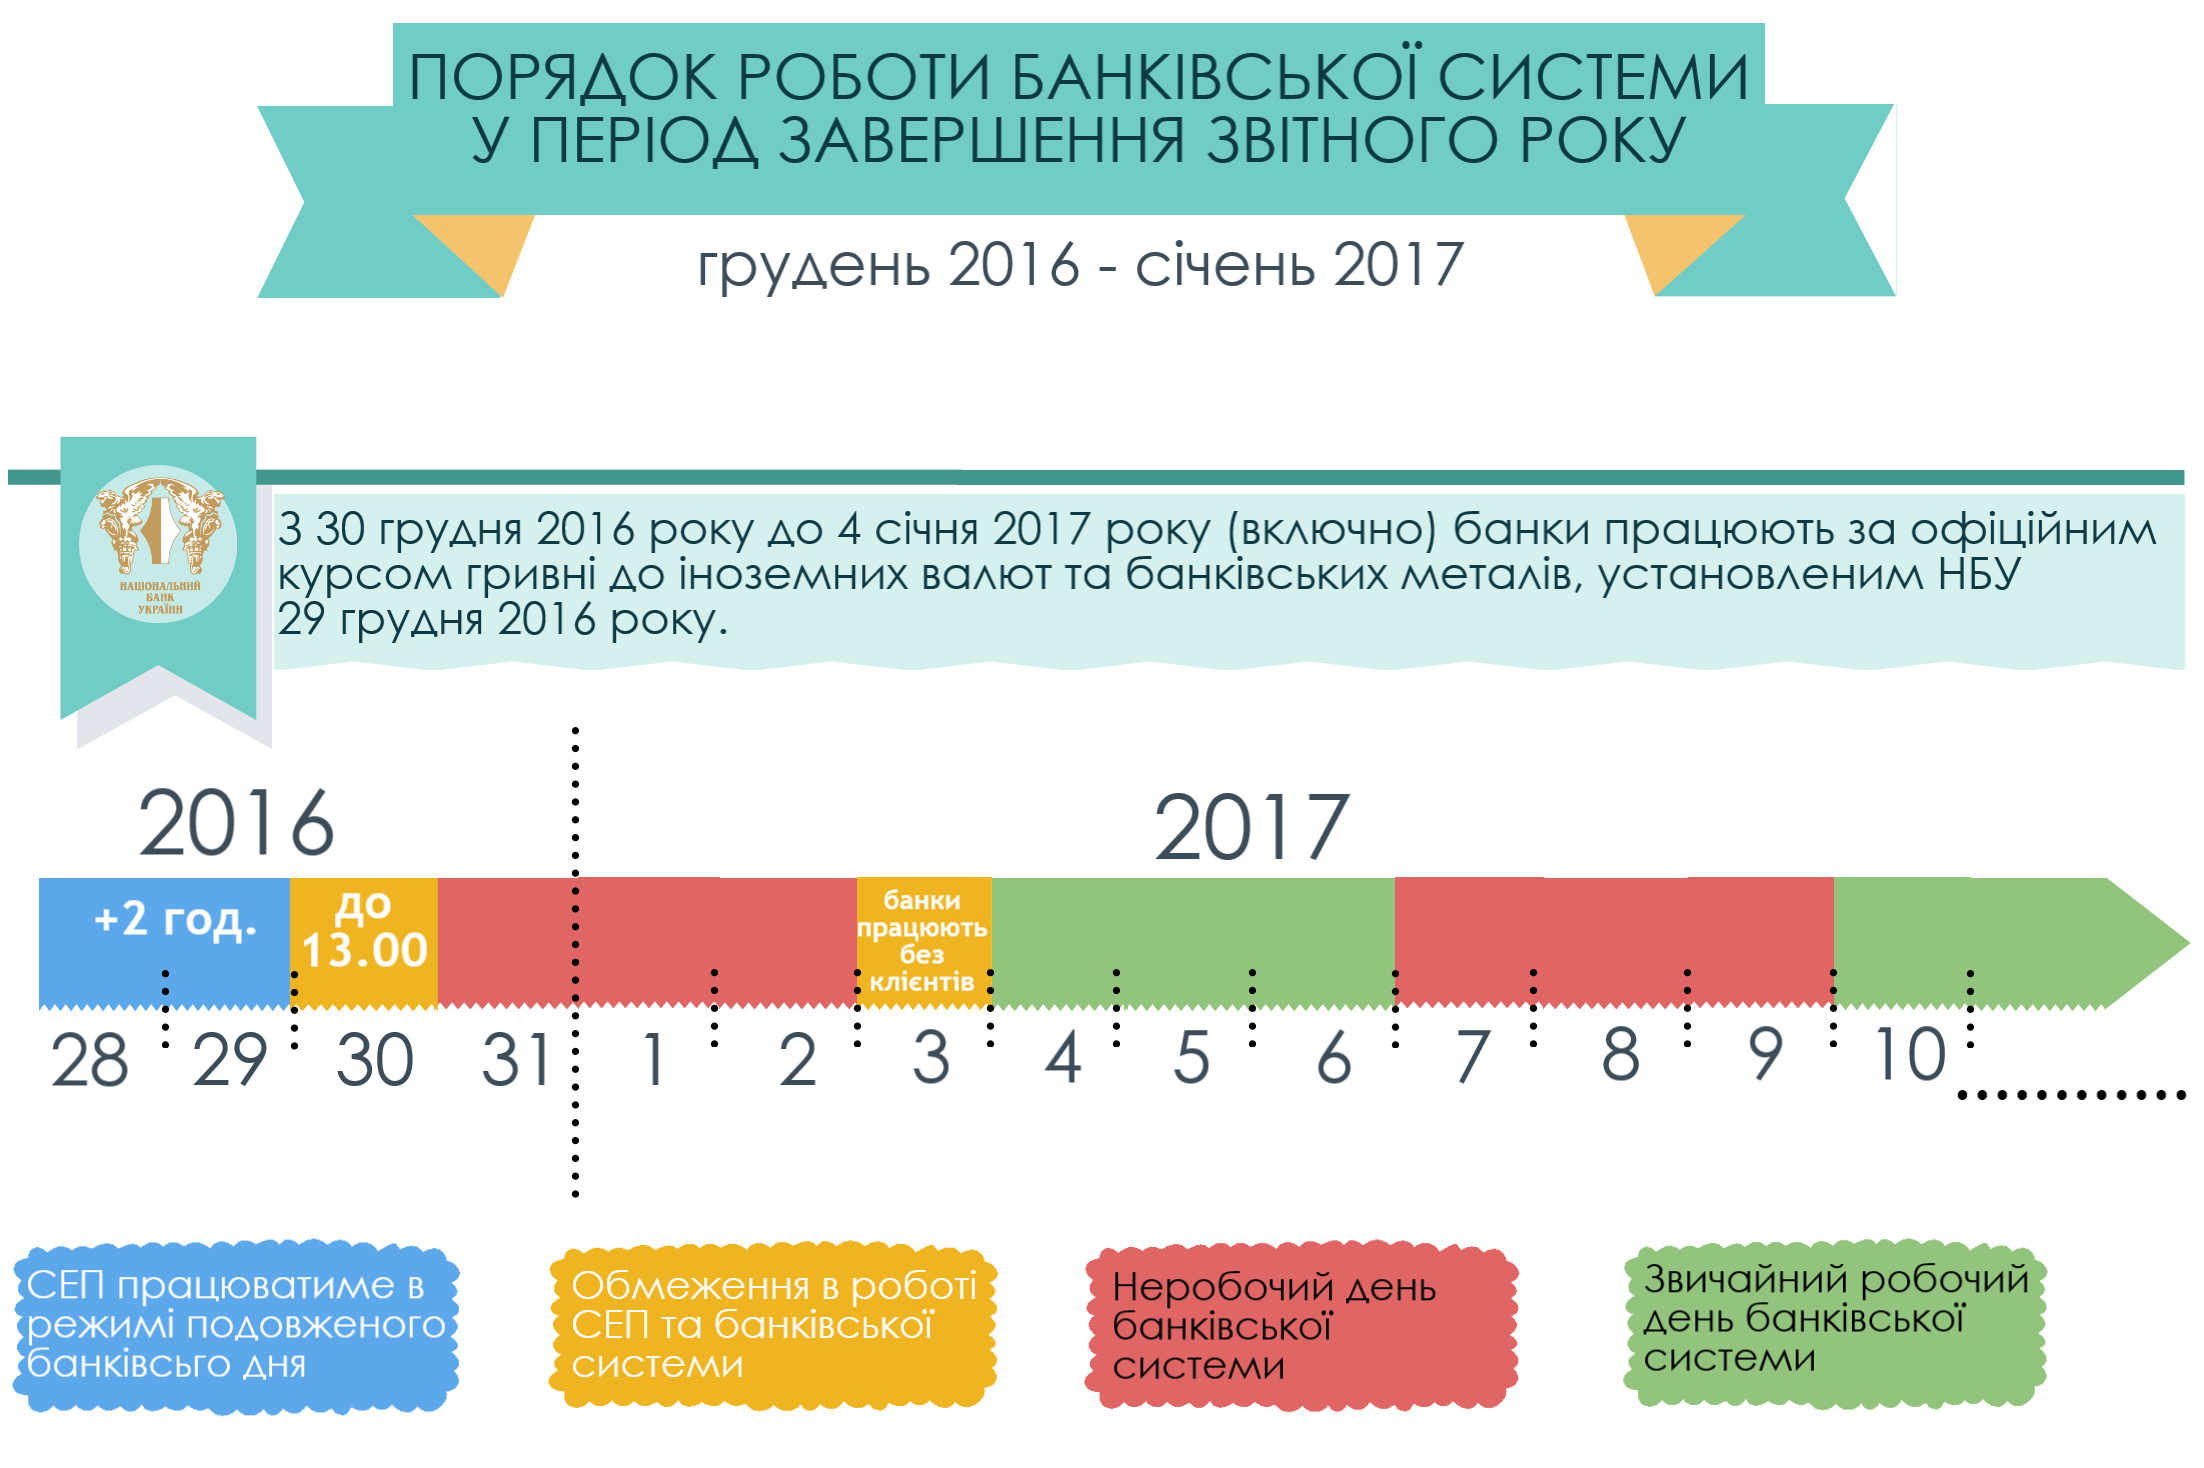 Как работают банки на новогодние и рождественские праздники 2017 года в Украине